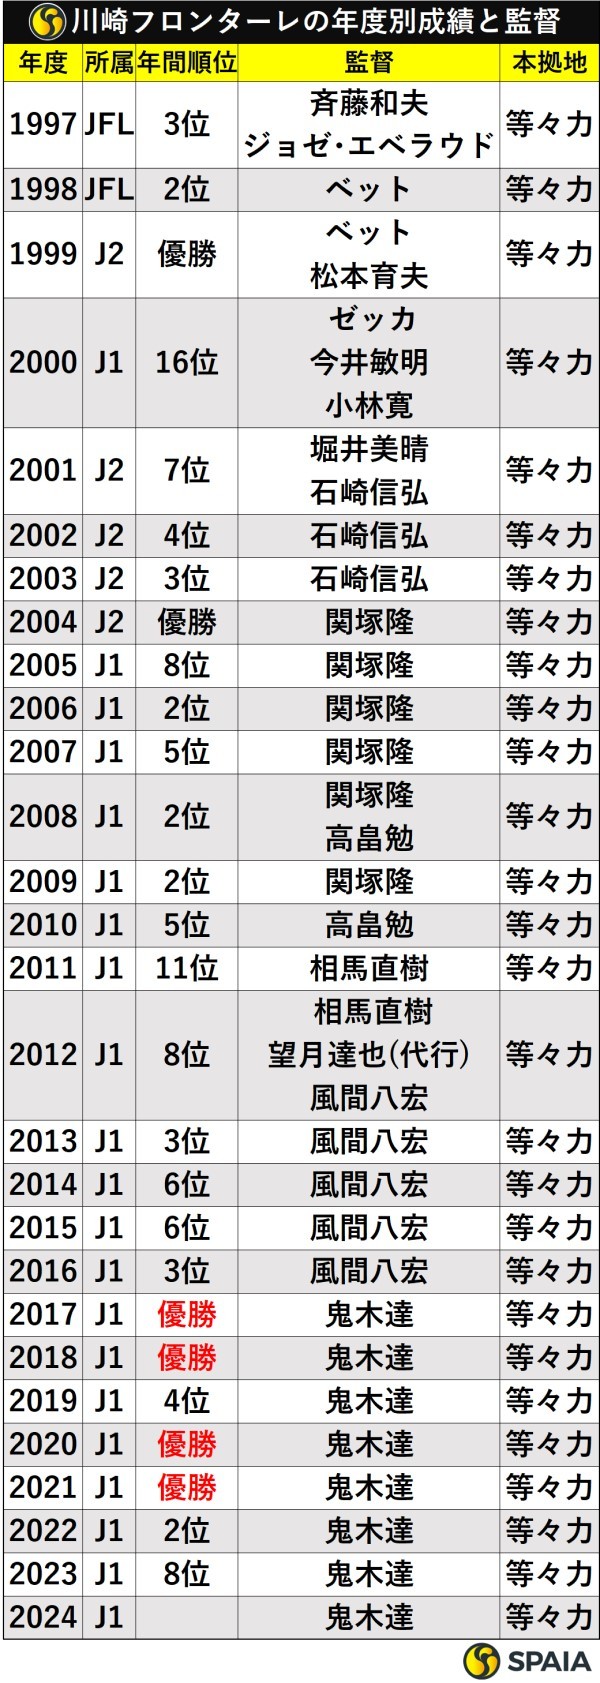 川崎フロンターレの年度別成績と歴代監督